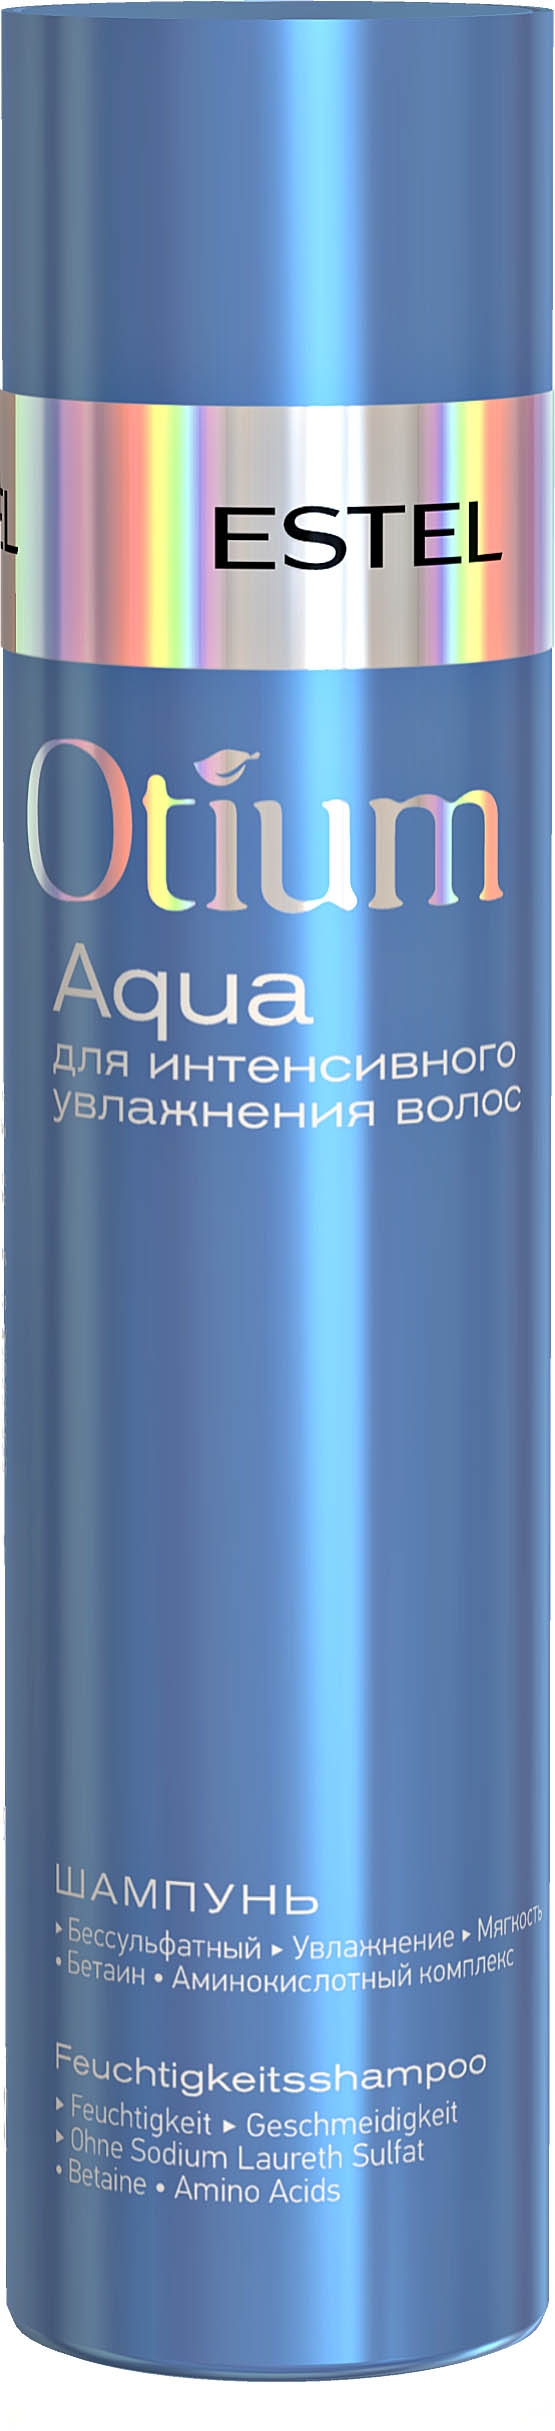 Шампунь для интенсивного увлажнения волос OTIUM AQUA, 250 мл OTM.35